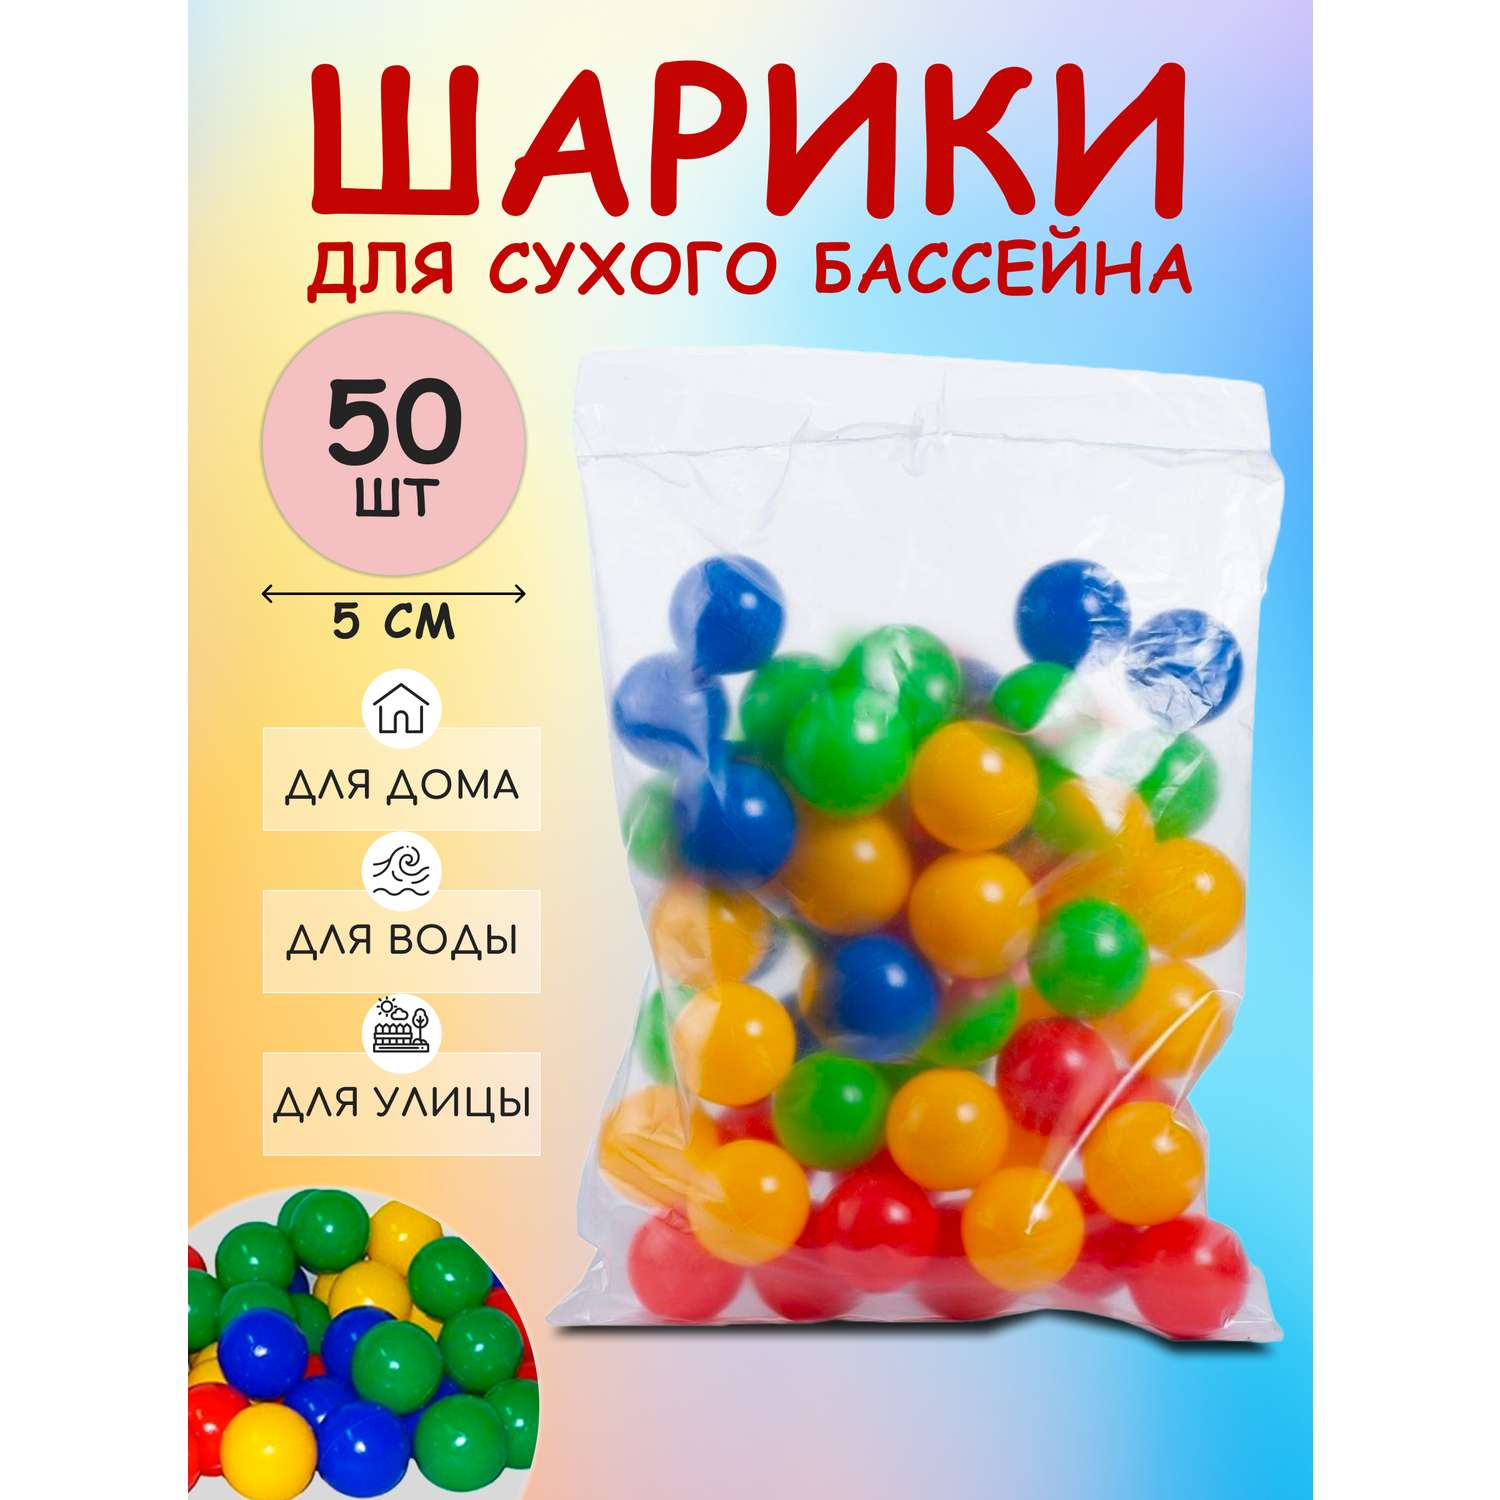 Растущие цветные шарики, орбиз TOYS. купить в интернет-магазине Wildberries